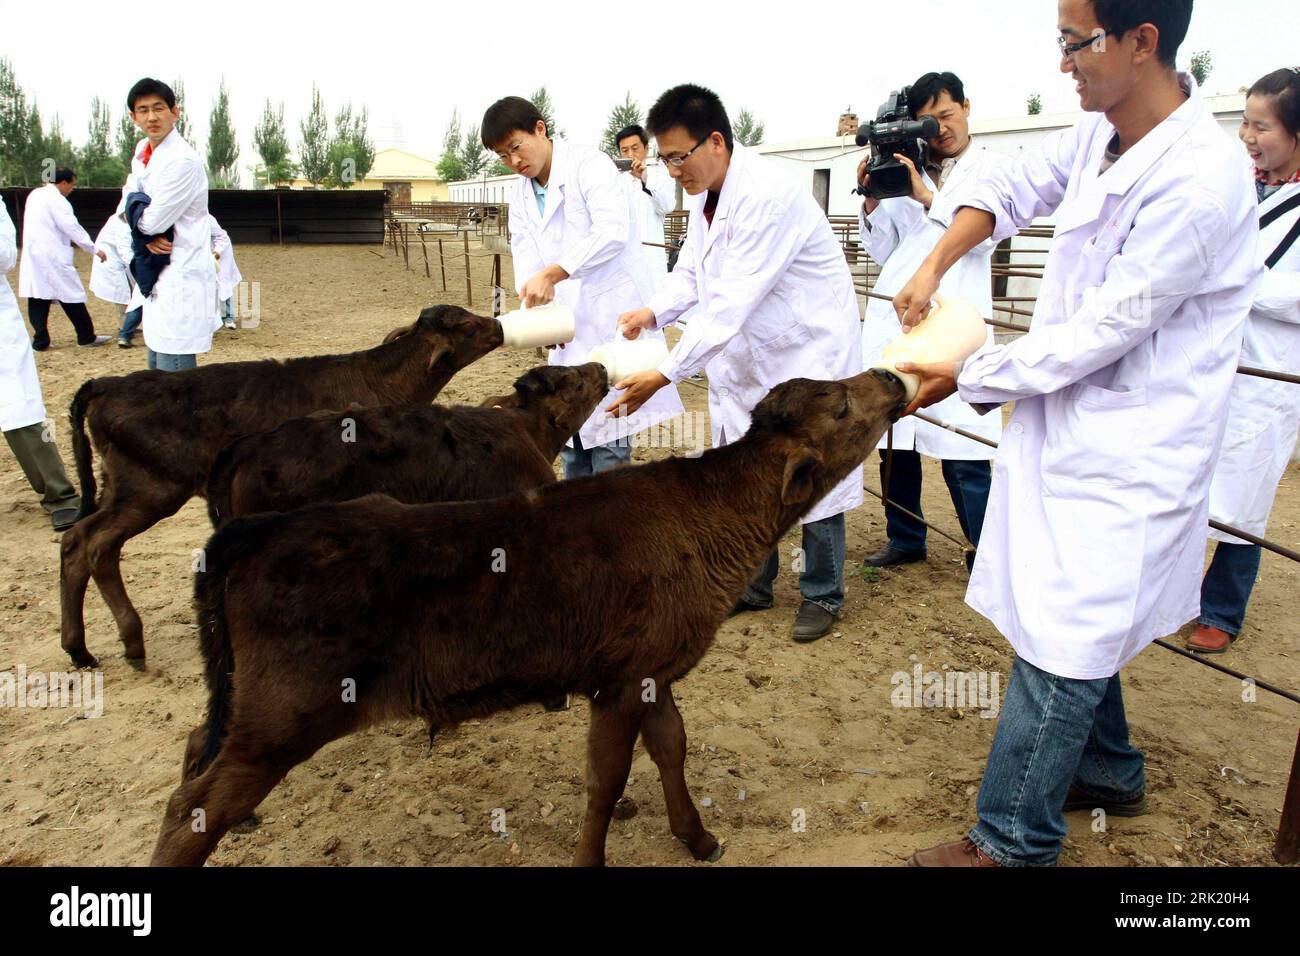 Wissenschaftler füttern geklonte Kälber in Baotou in der chinesischen autonomen Region Innere Mongolei : chinesischen Wissenschaftlern ist es gelungen, fünf Bullenkälber zu klonen - PUBLICATIONxNOTxINxCHN Banque D'Images